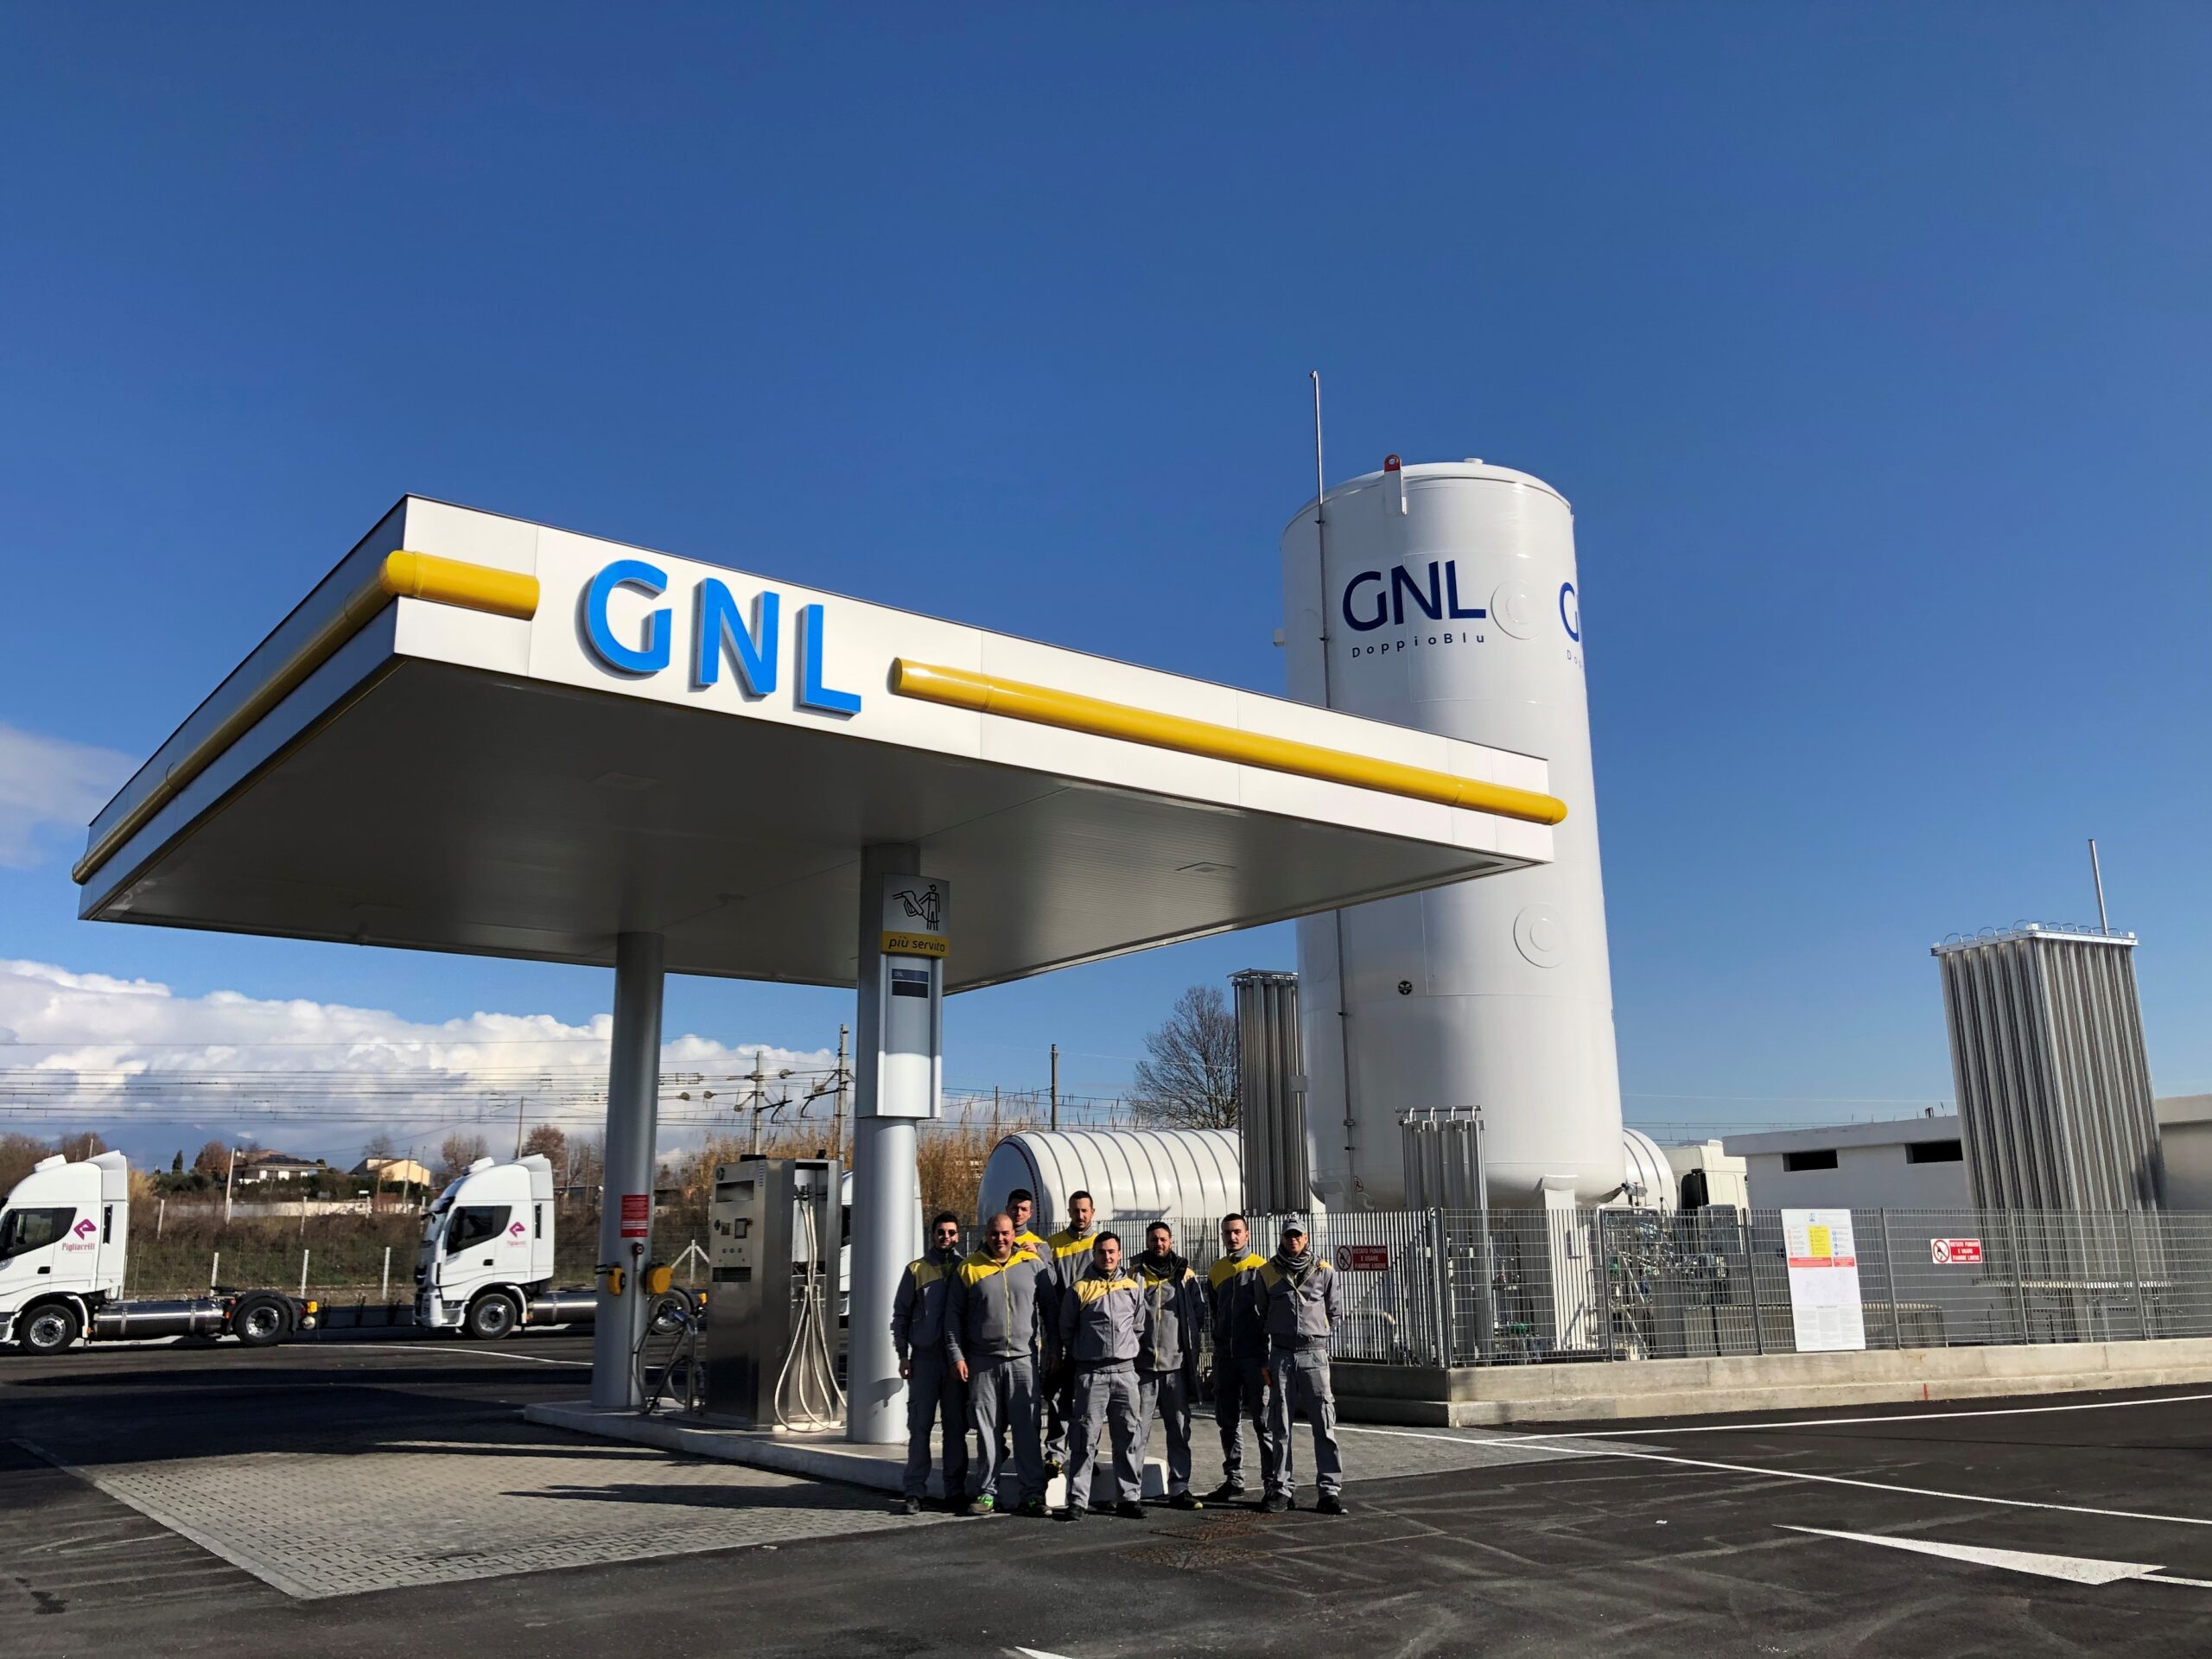 Autotrasporto: Lazio, nuovo distributore GNL a Ferentino (Frosinone)